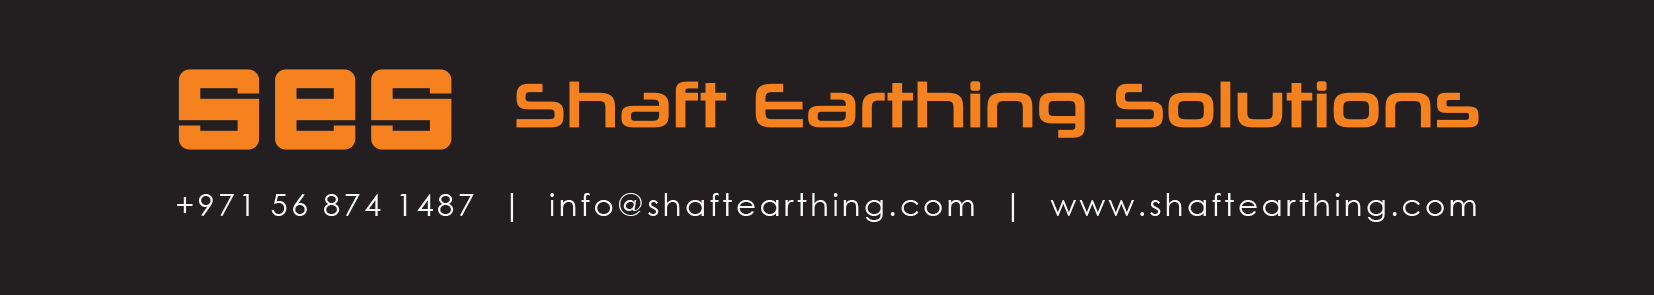 Shaft Earthing Details